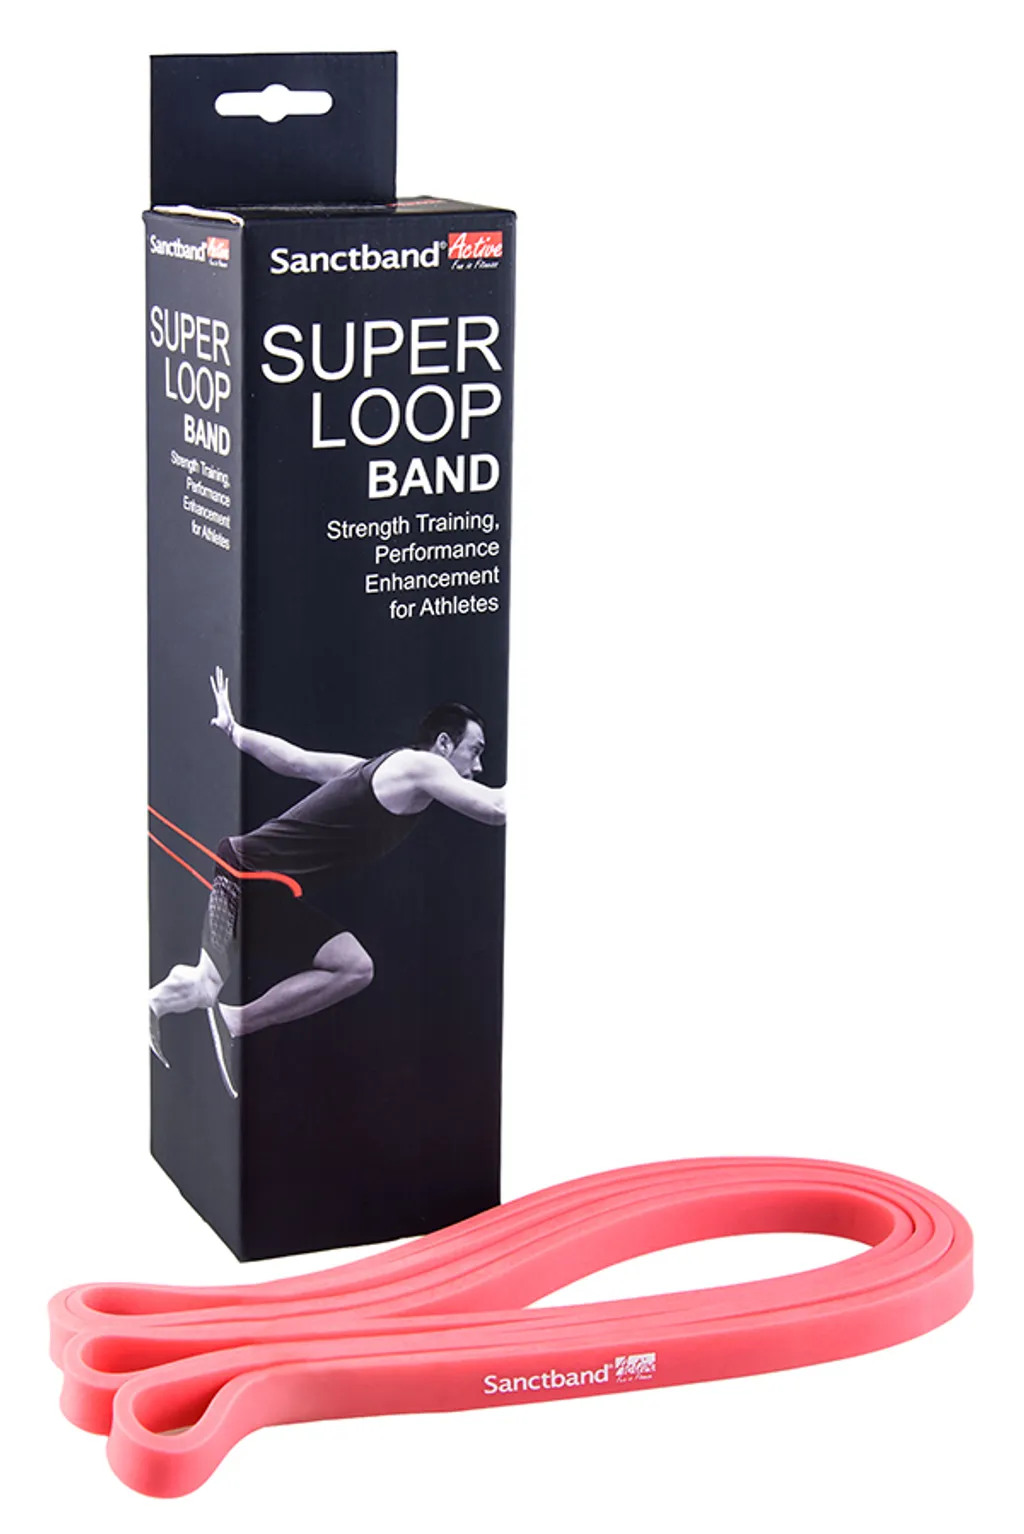 Sanctband Active Super Loop